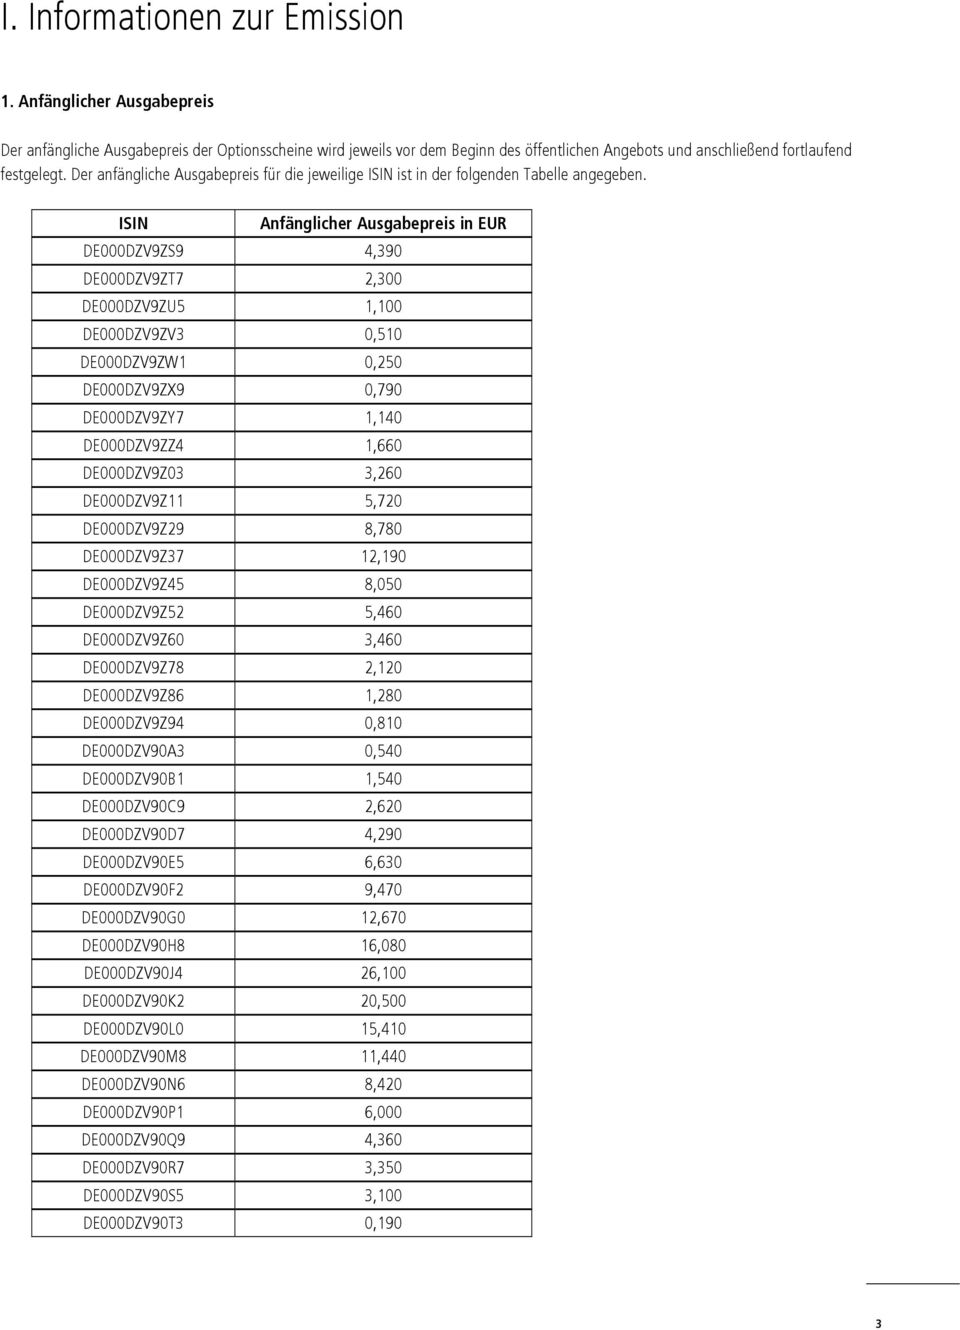 Der anfängliche Ausgabepreis für die jeweilige ISIN ist in der folgenden Tabelle angegeben.